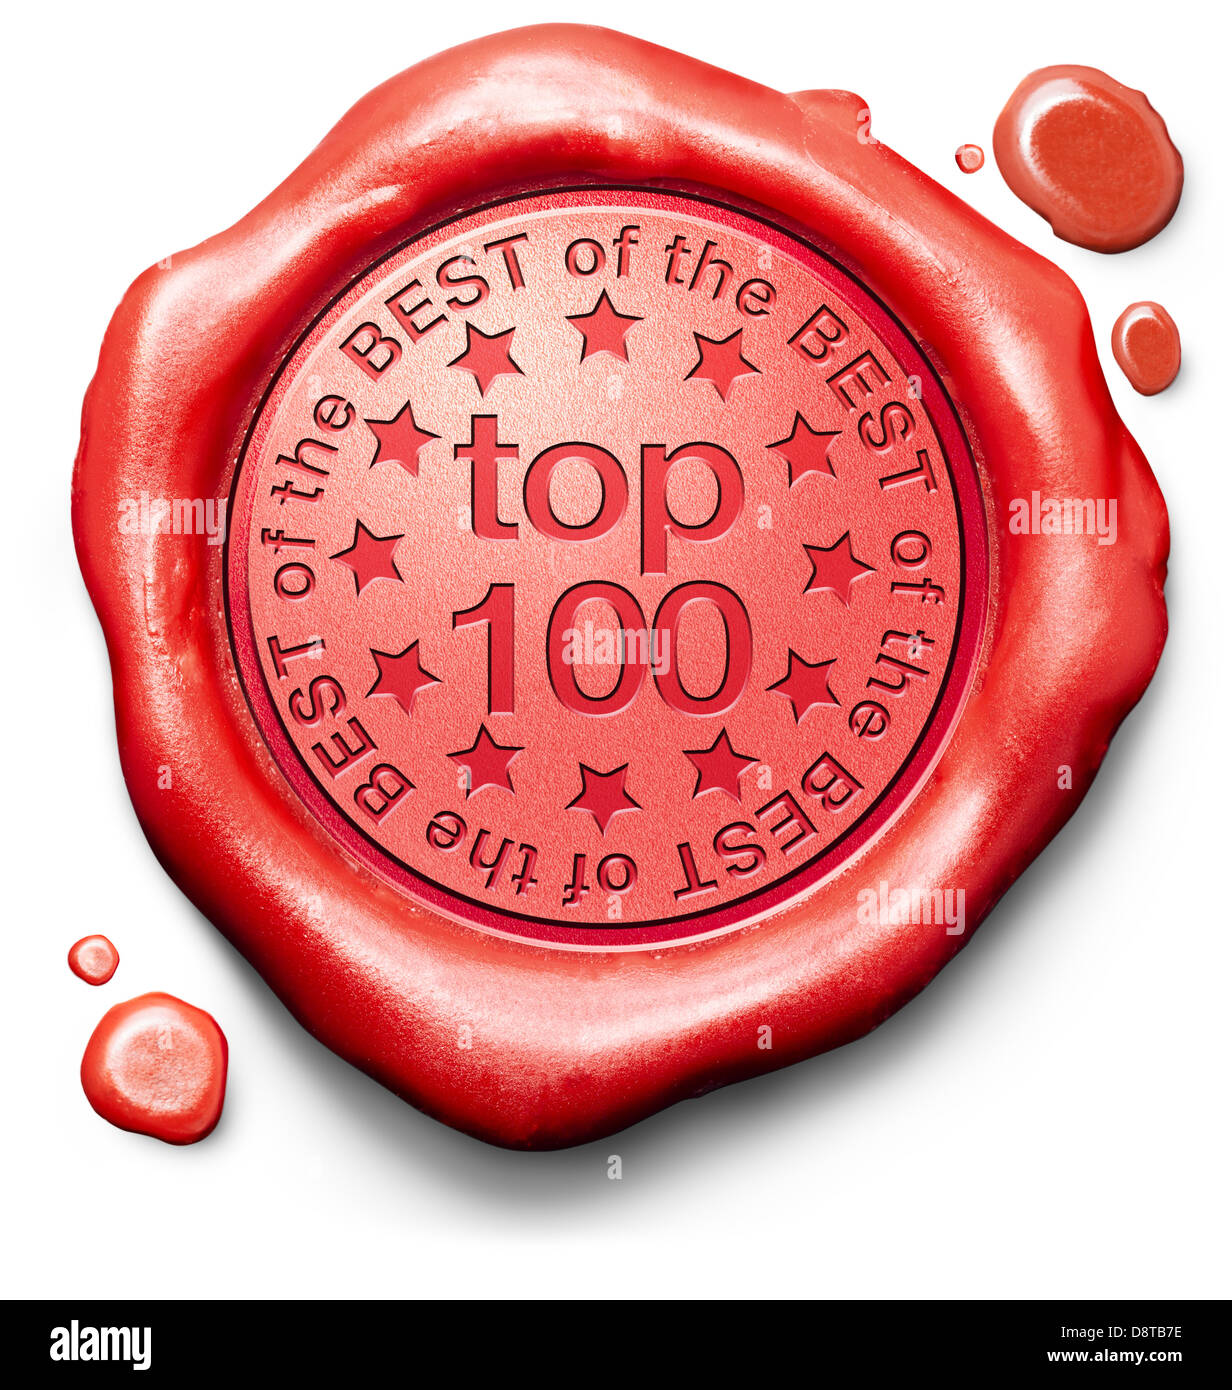 Top 5 besten Bestseller Qualität Etikett rotes Wachs Siegelstempel oder Abzeichen Stockfoto